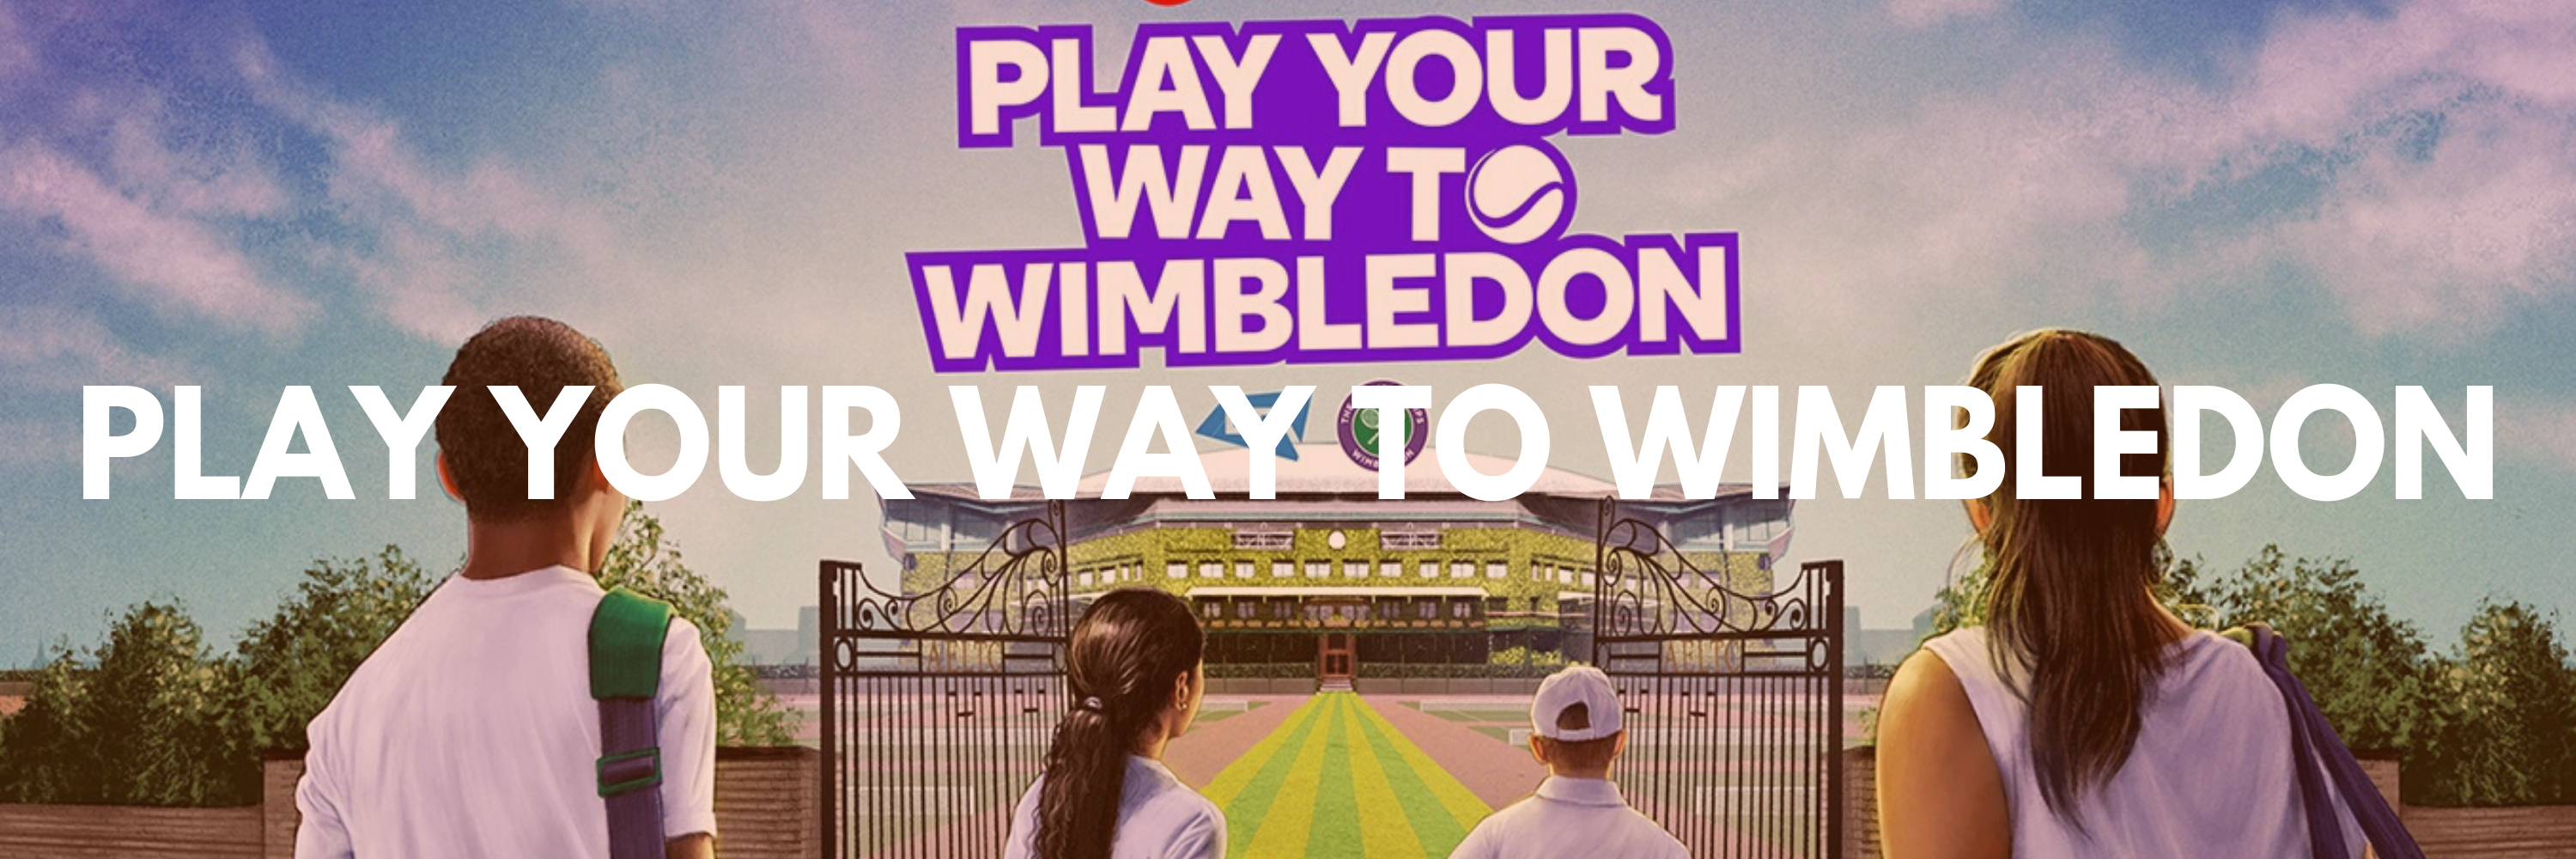 play your way to wimbledon